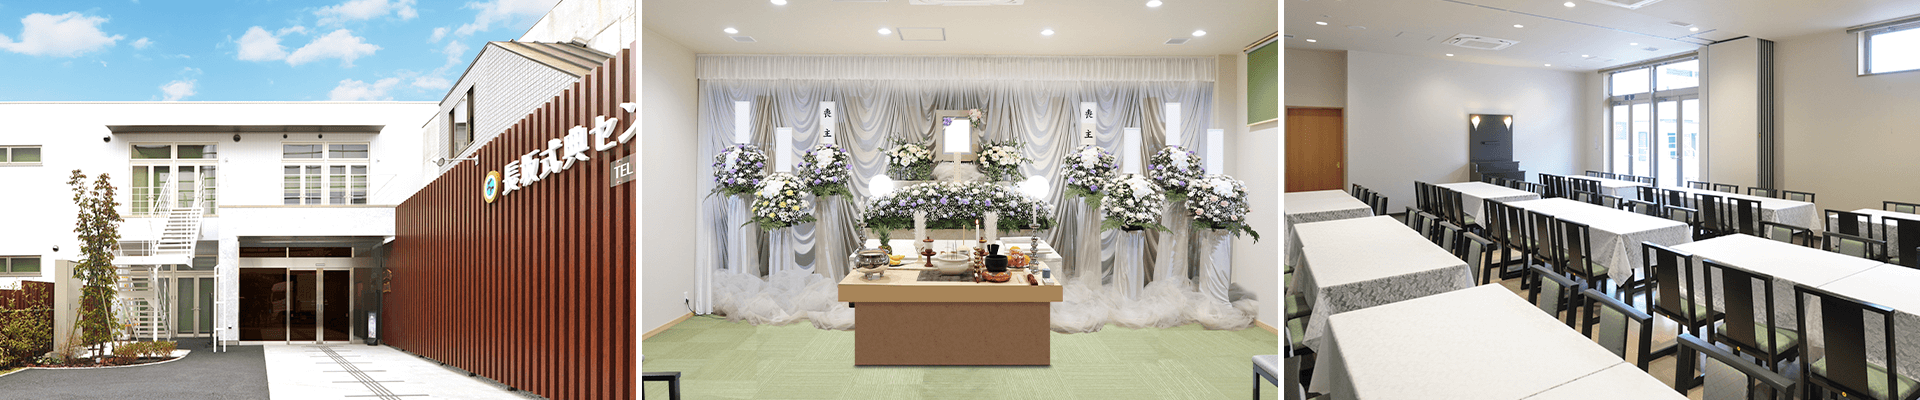 葬儀・葬式・家族葬なら16.5万円からできる長坂式典センター 東久留米市の葬儀場一覧